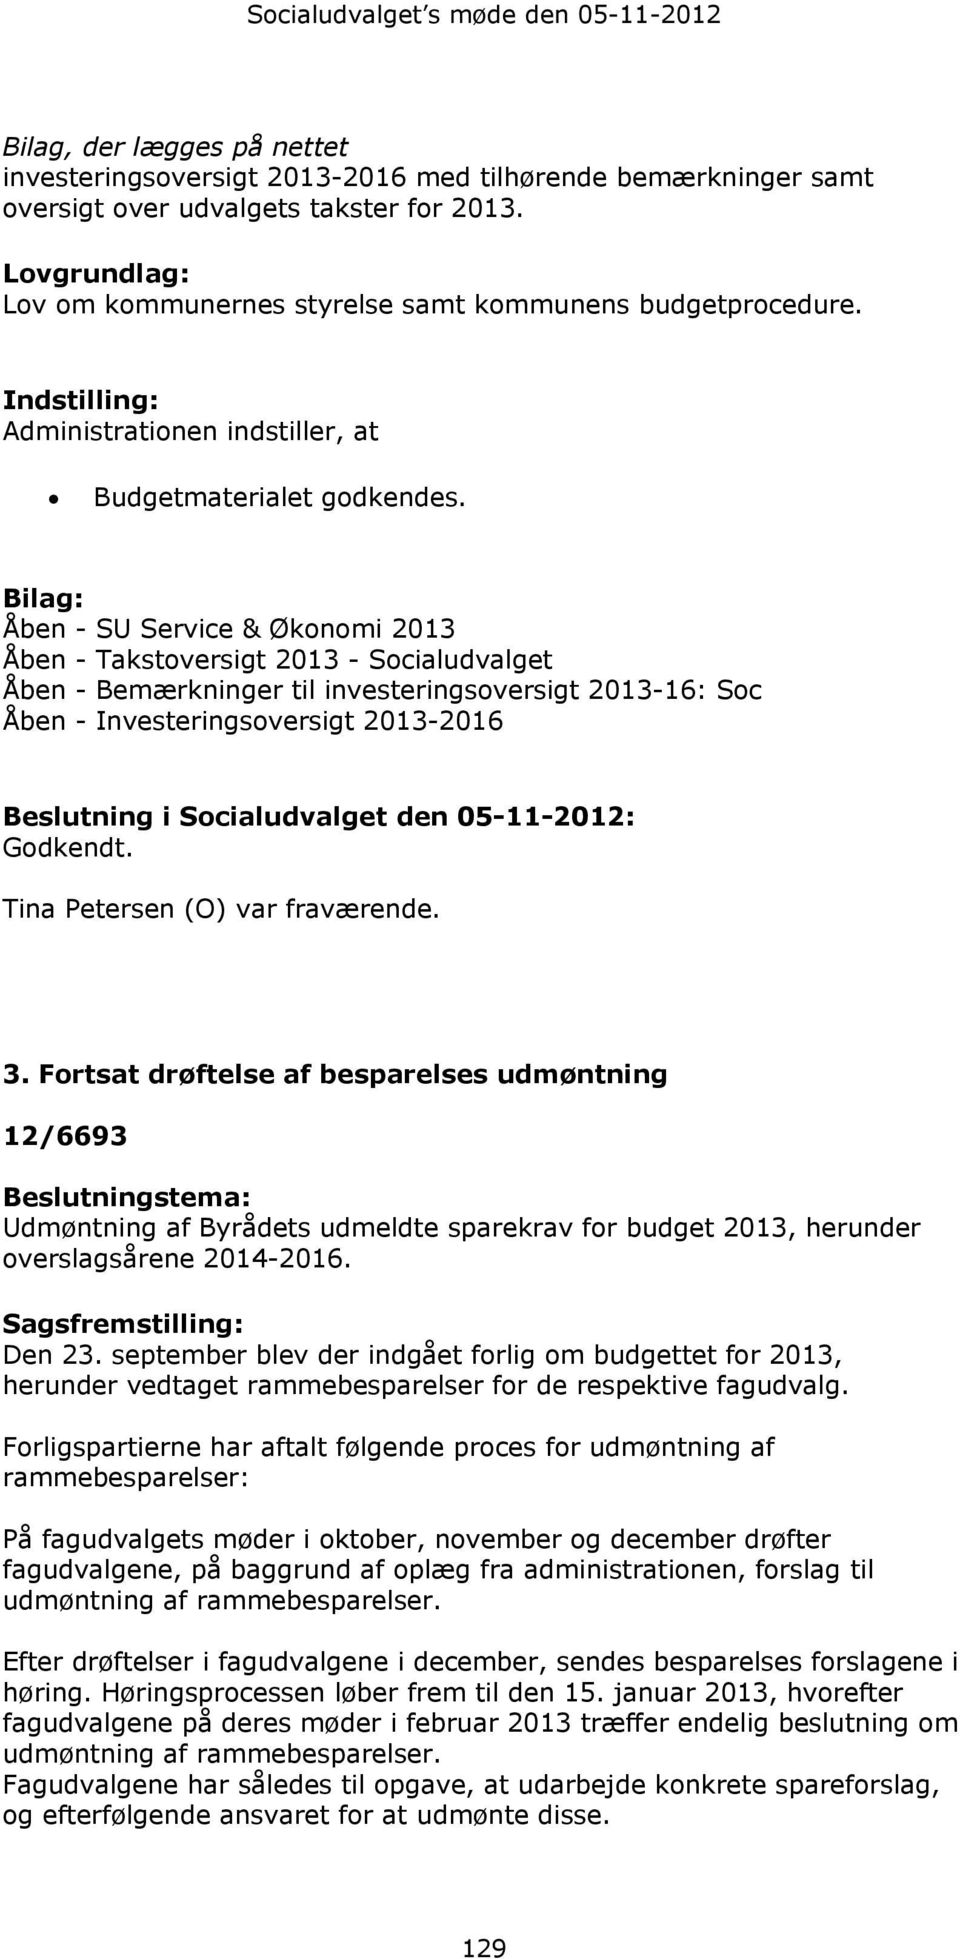 Bilag: Åben - SU Service & Økonomi 2013 Åben - Takstoversigt 2013 - Åben - Bemærkninger til investeringsoversigt 2013-16: Soc Åben - Investeringsoversigt 2013-2016 Beslutning i den 05-11-2012: